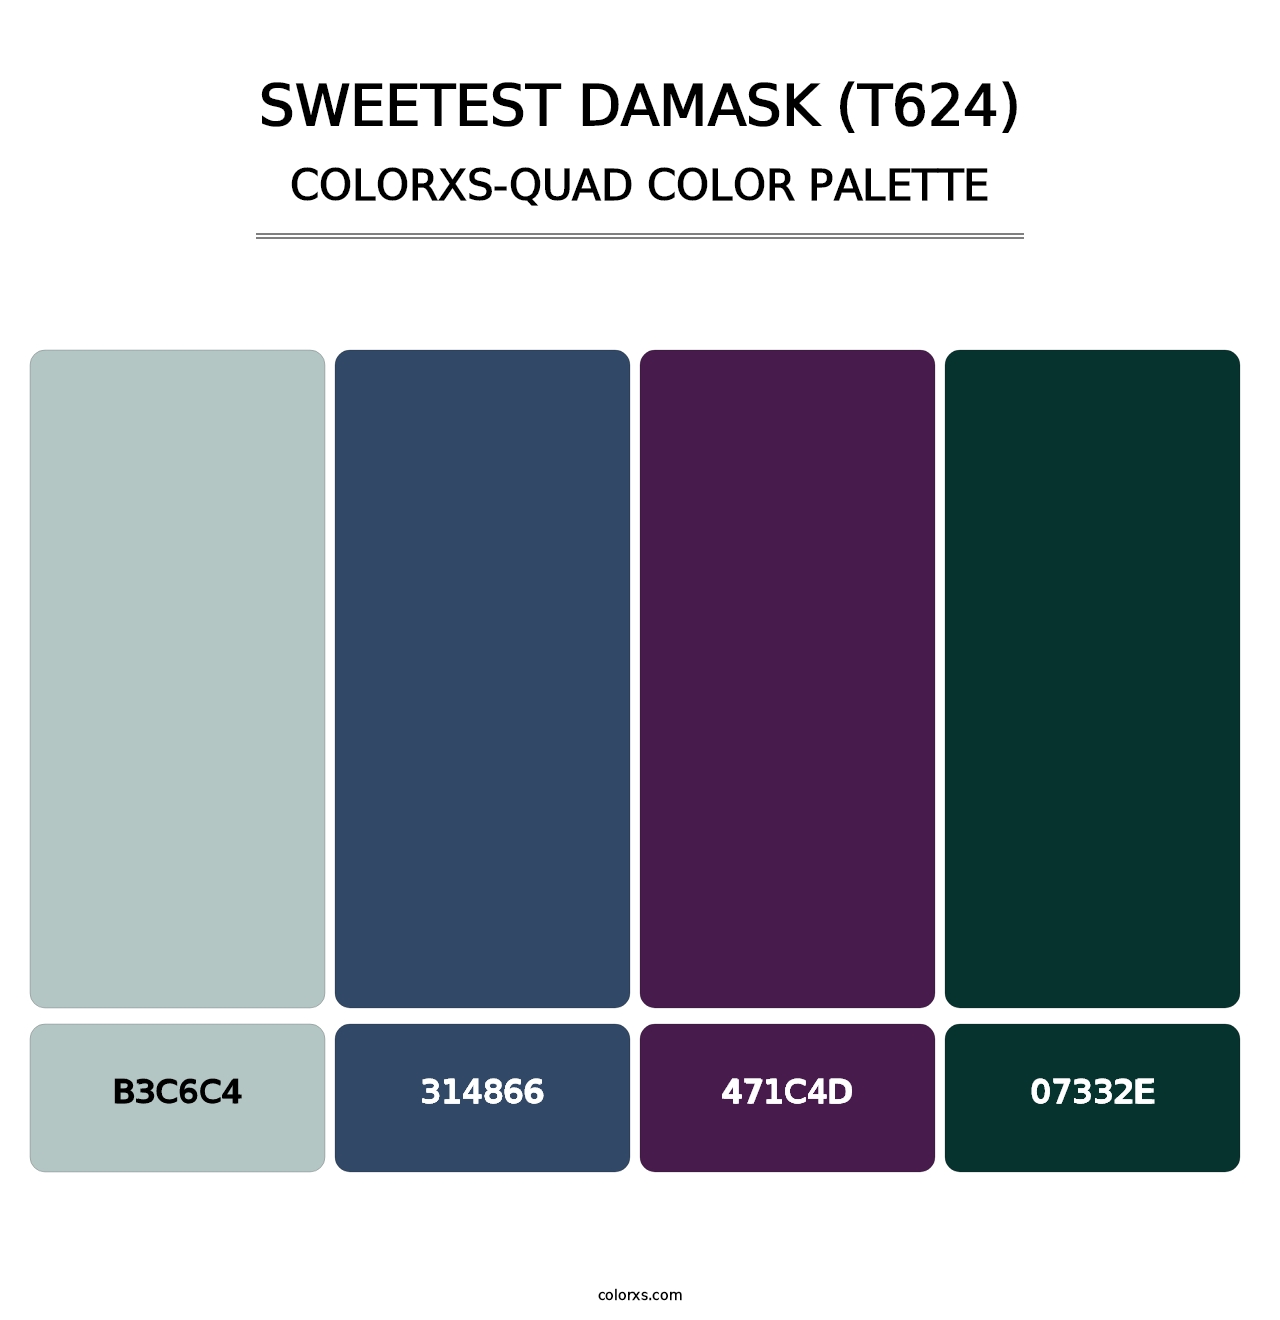 Sweetest Damask (T624) - Colorxs Quad Palette